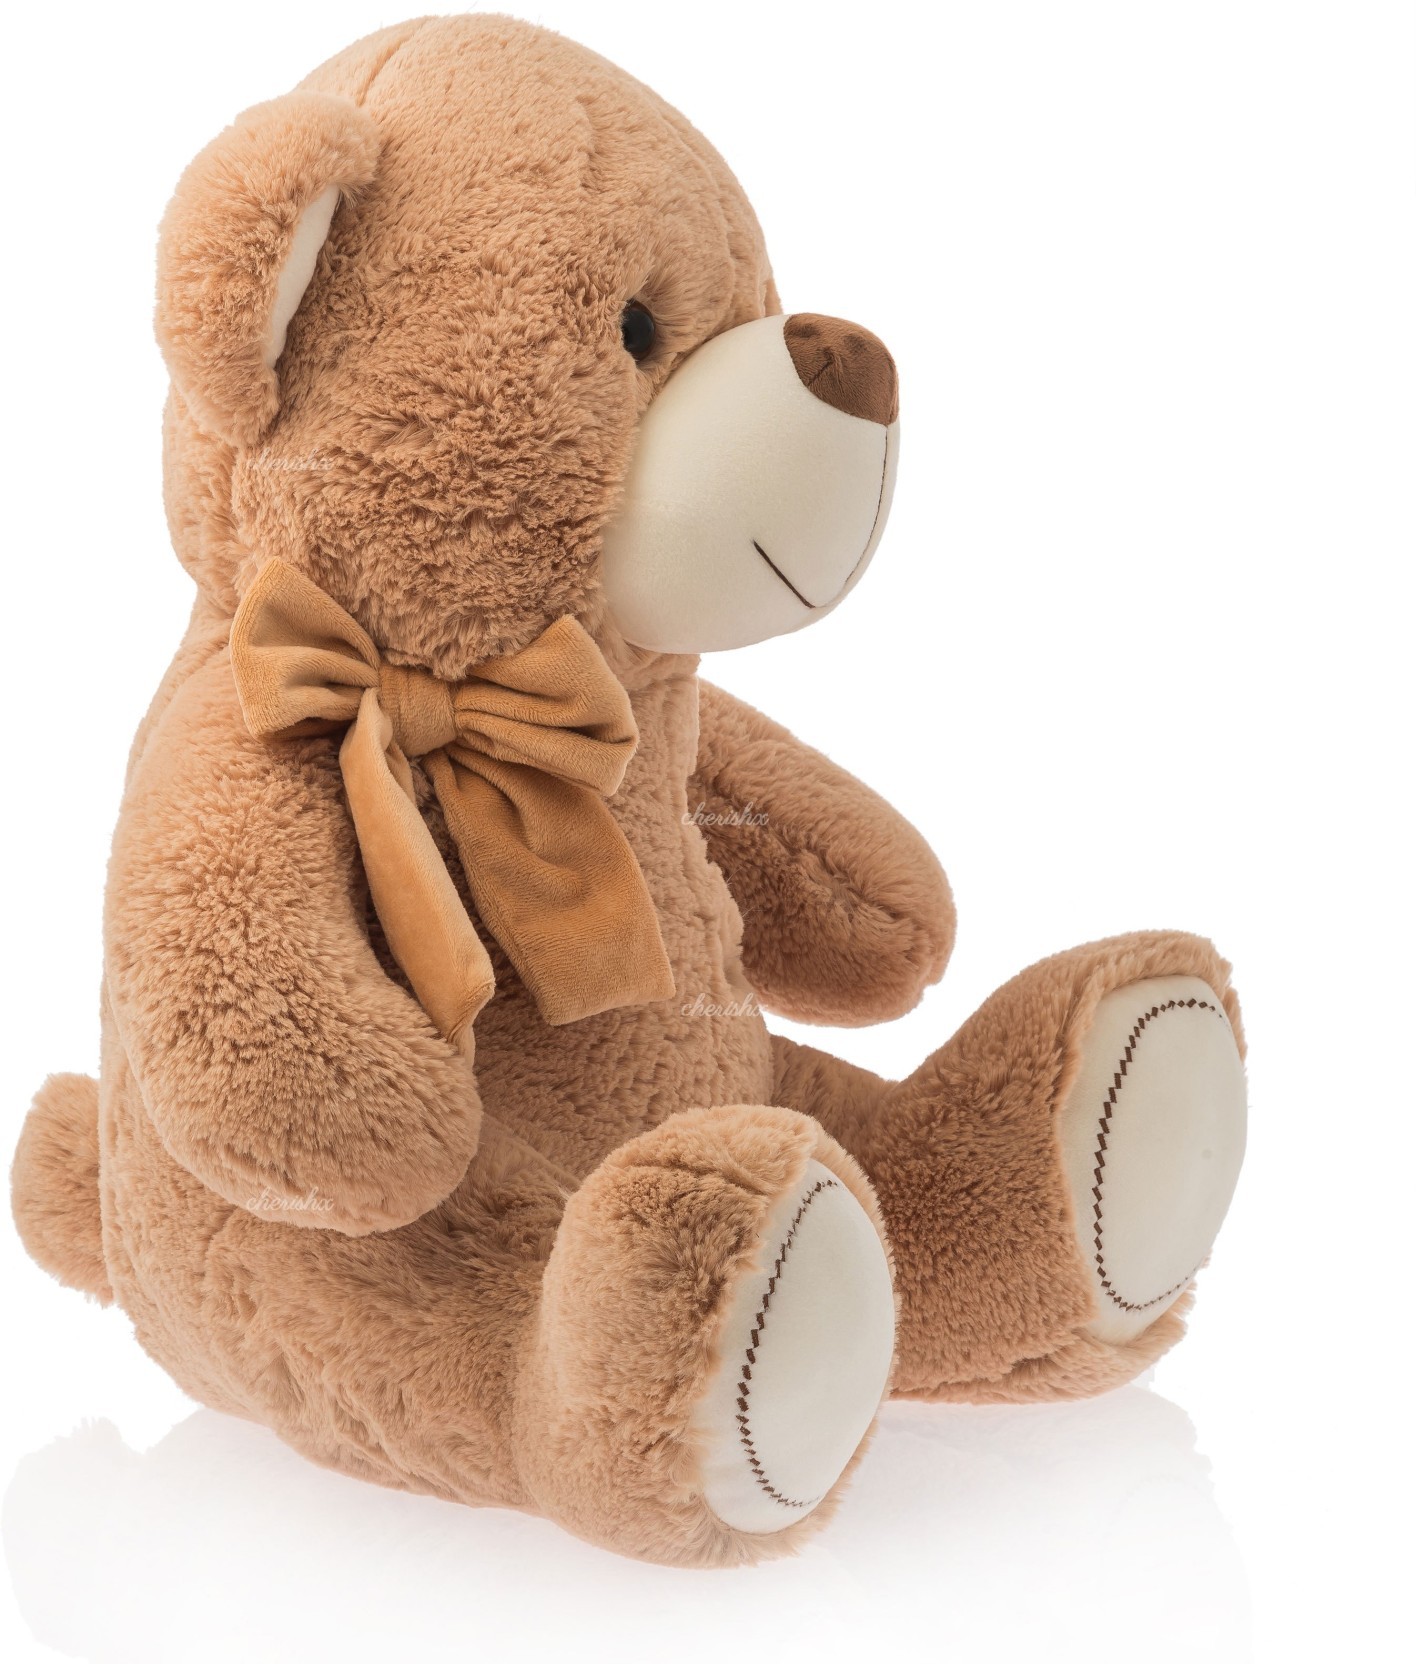 Fluffy Teddy Bear for Gifting